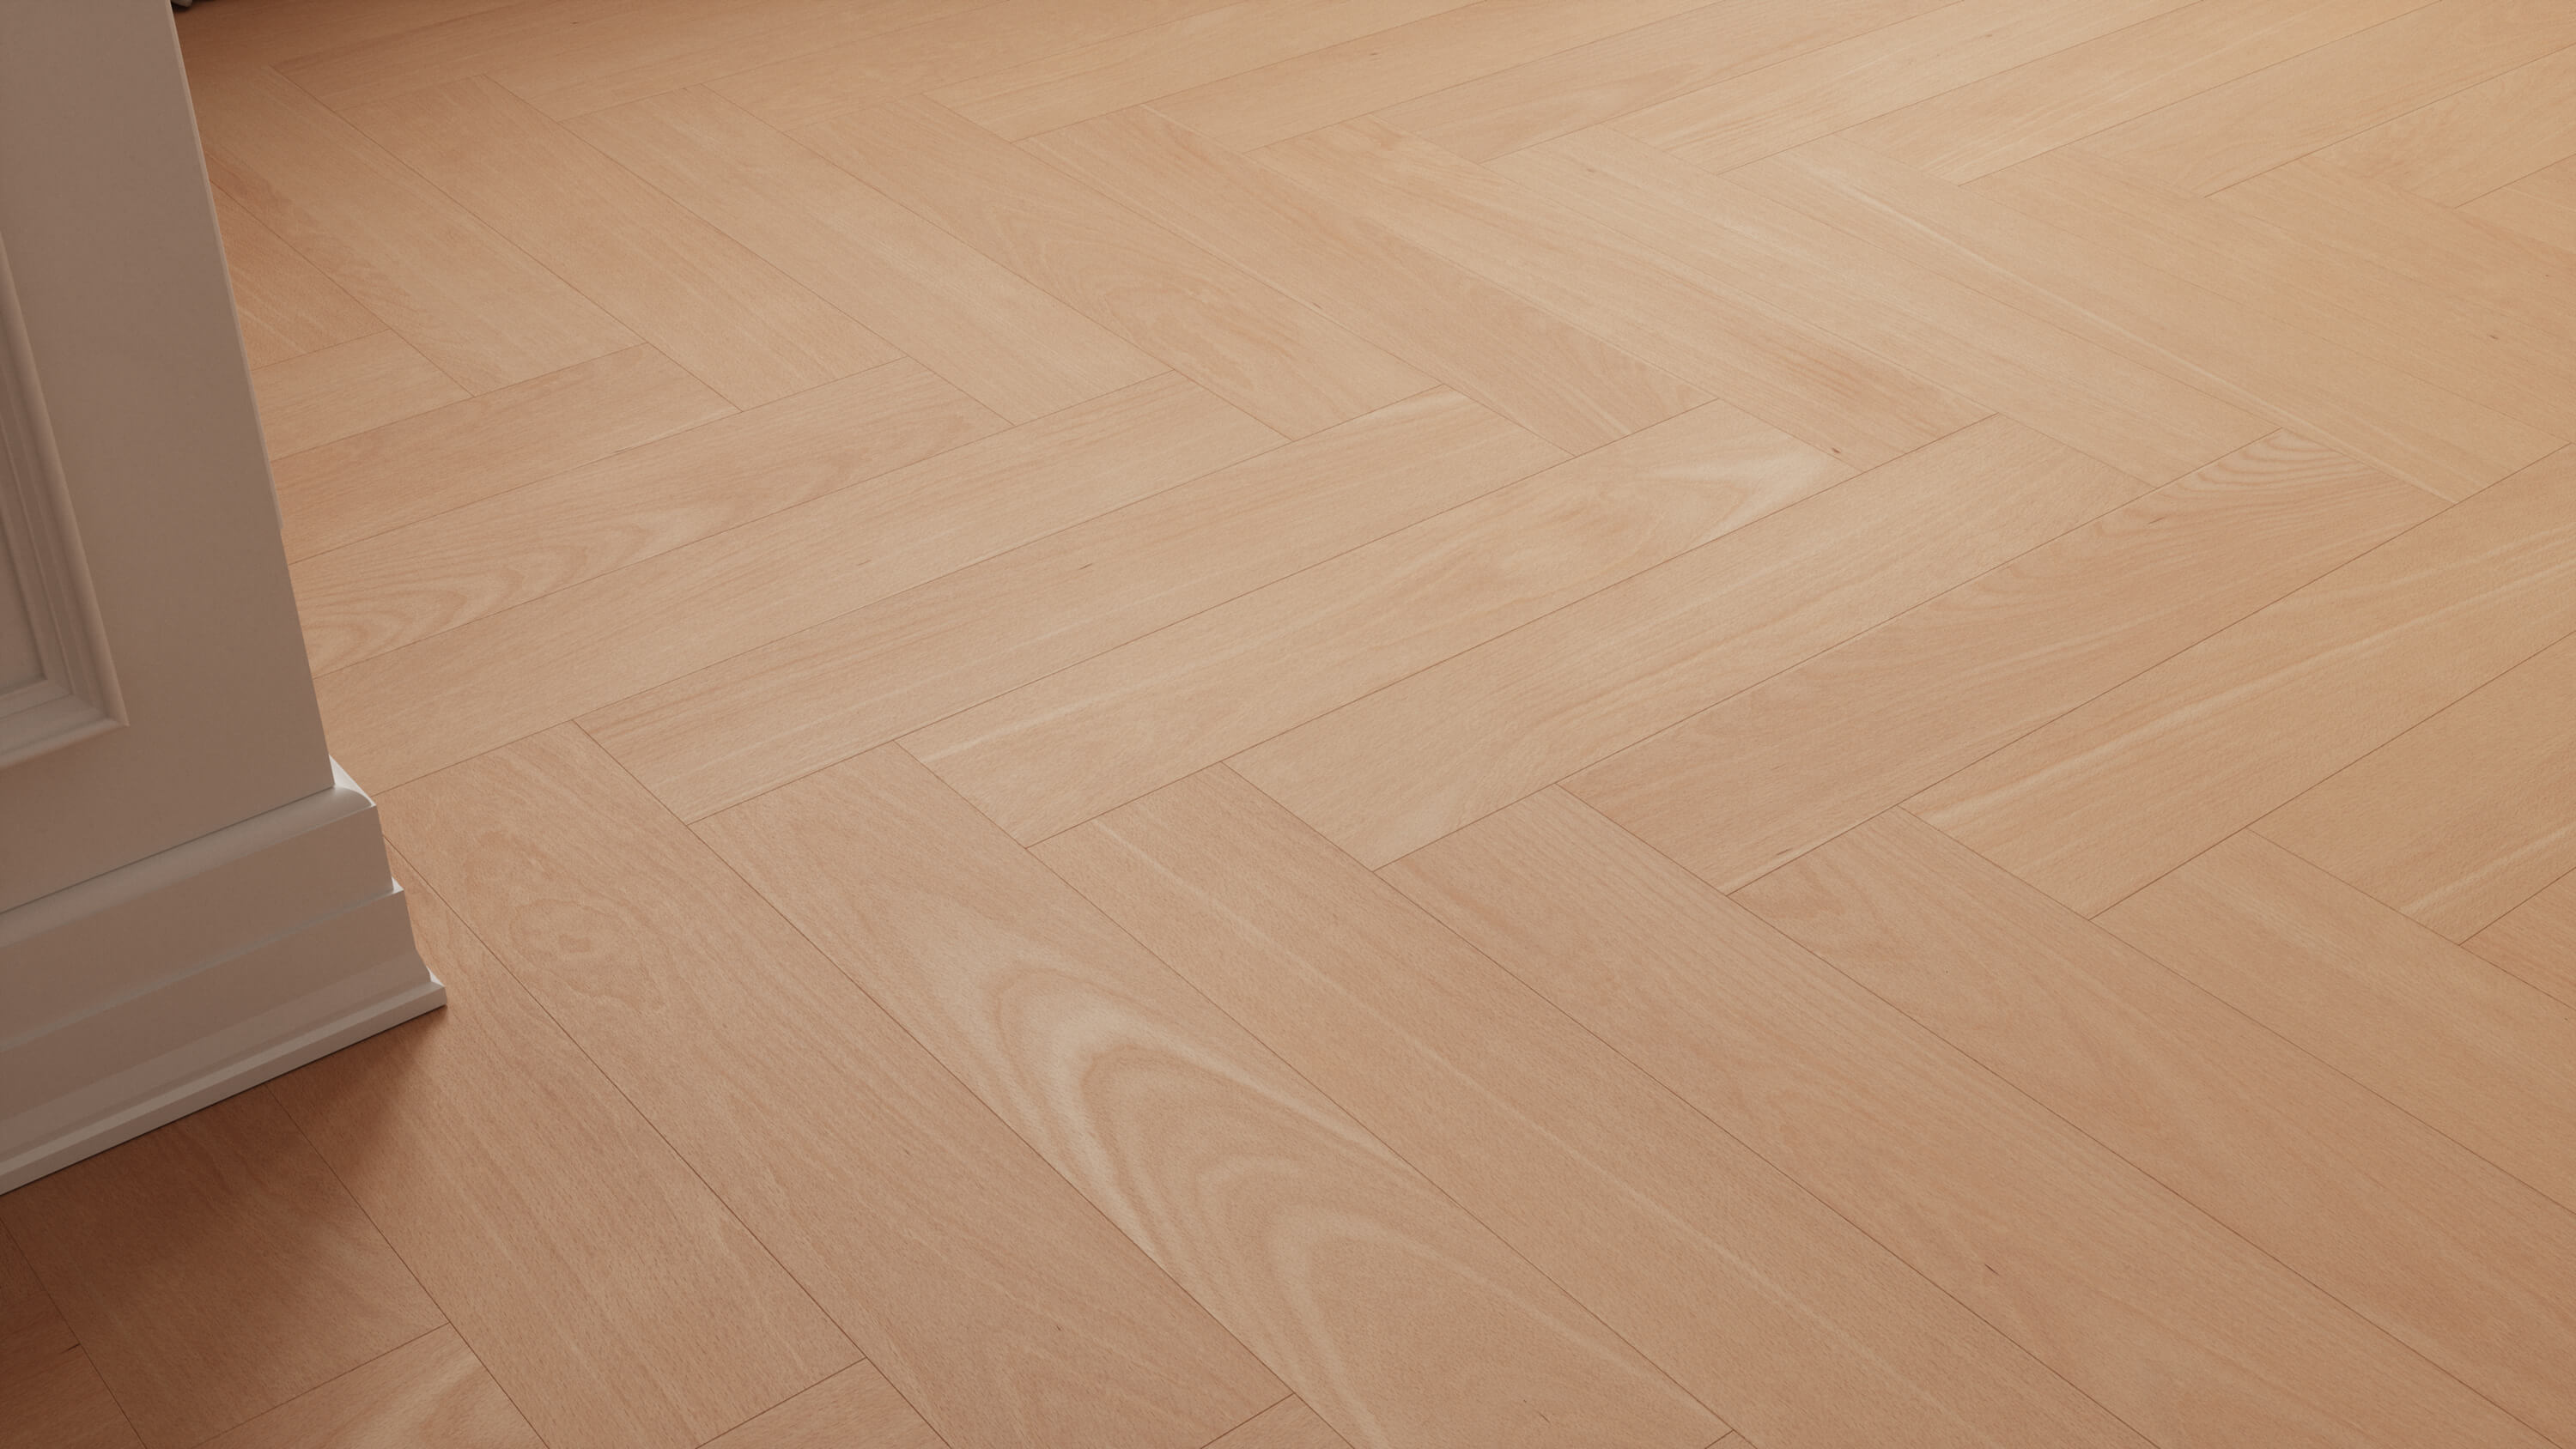 seamless wooden floor texture in beech wood